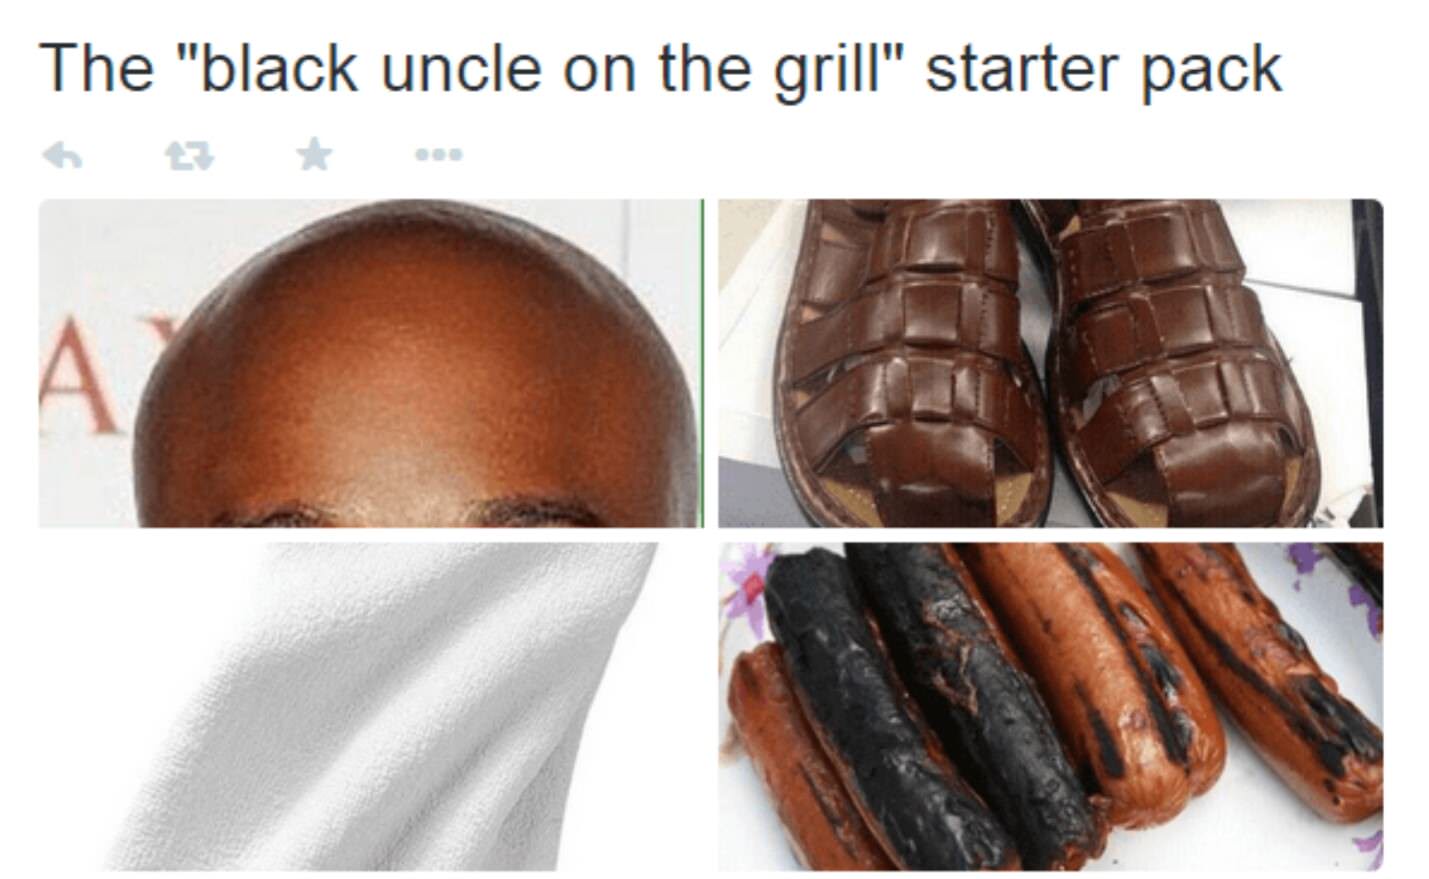 Black uncle